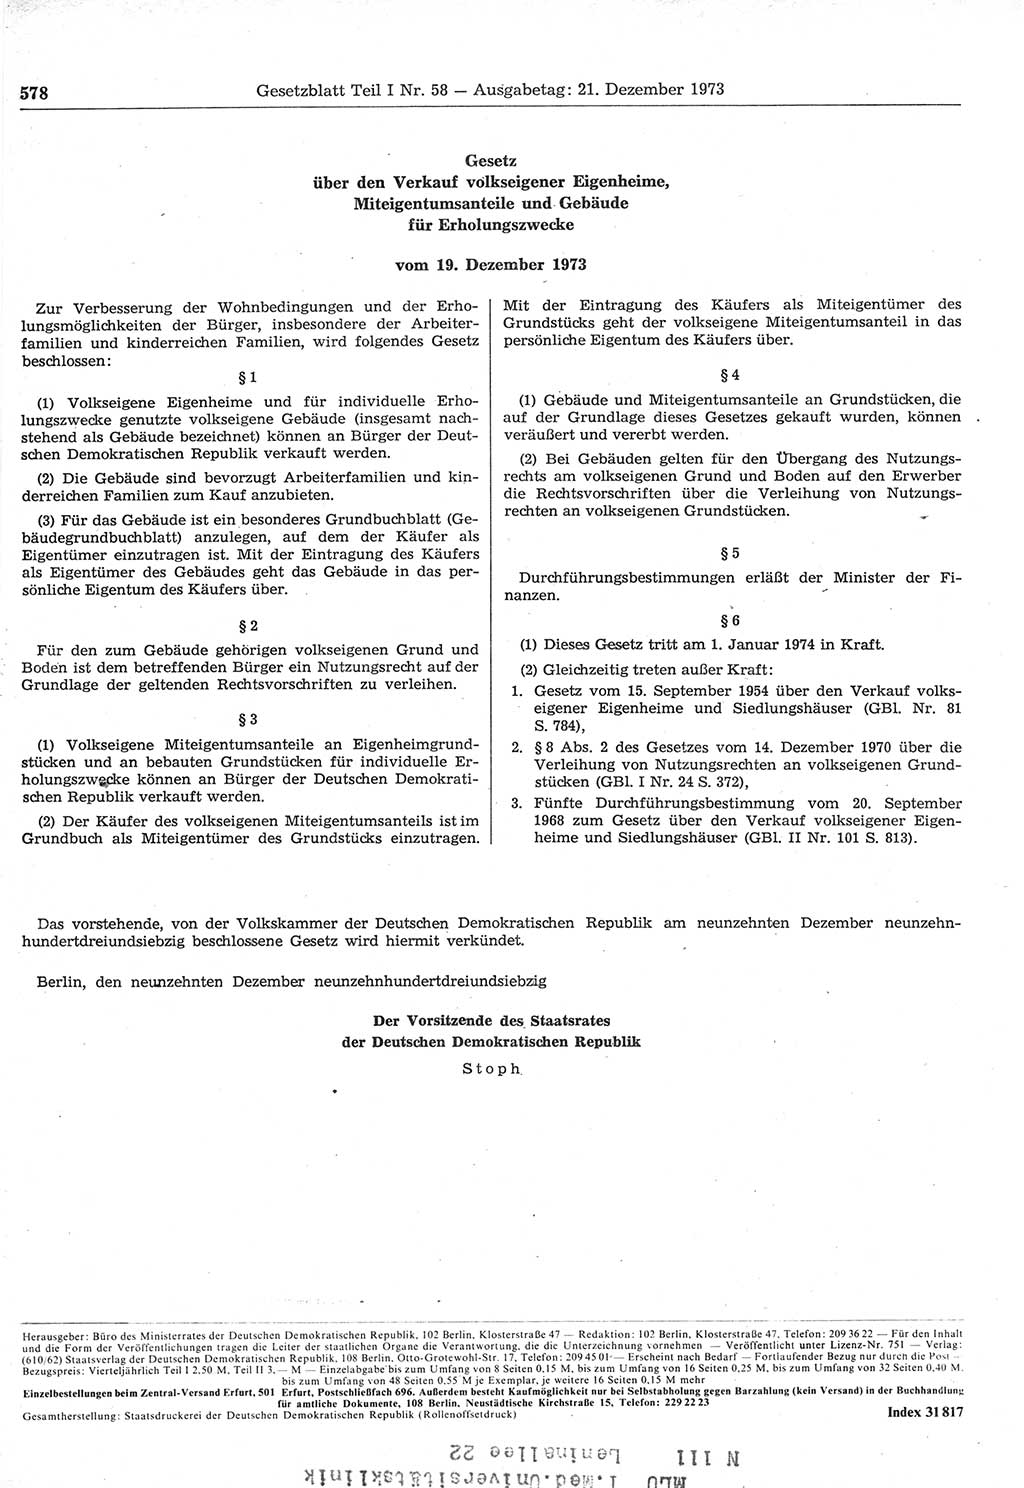 Gesetzblatt (GBl.) der Deutschen Demokratischen Republik (DDR) Teil Ⅰ 1973, Seite 578 (GBl. DDR Ⅰ 1973, S. 578)